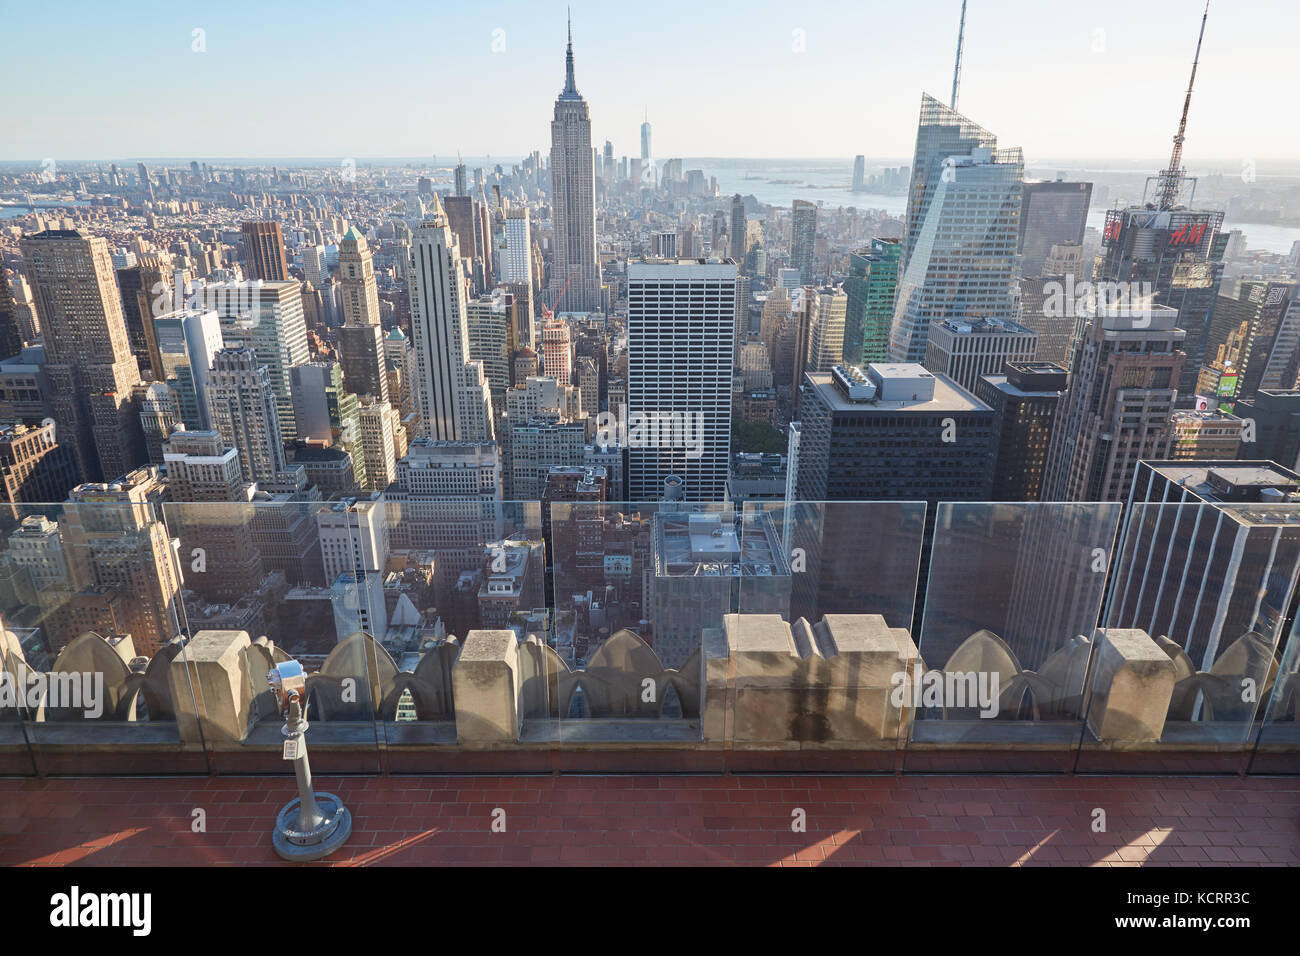 Rockefeller Center vide observation deck, Empire State Building et vue sur l'horizon en une journée ensoleillée, personne à New York Banque D'Images